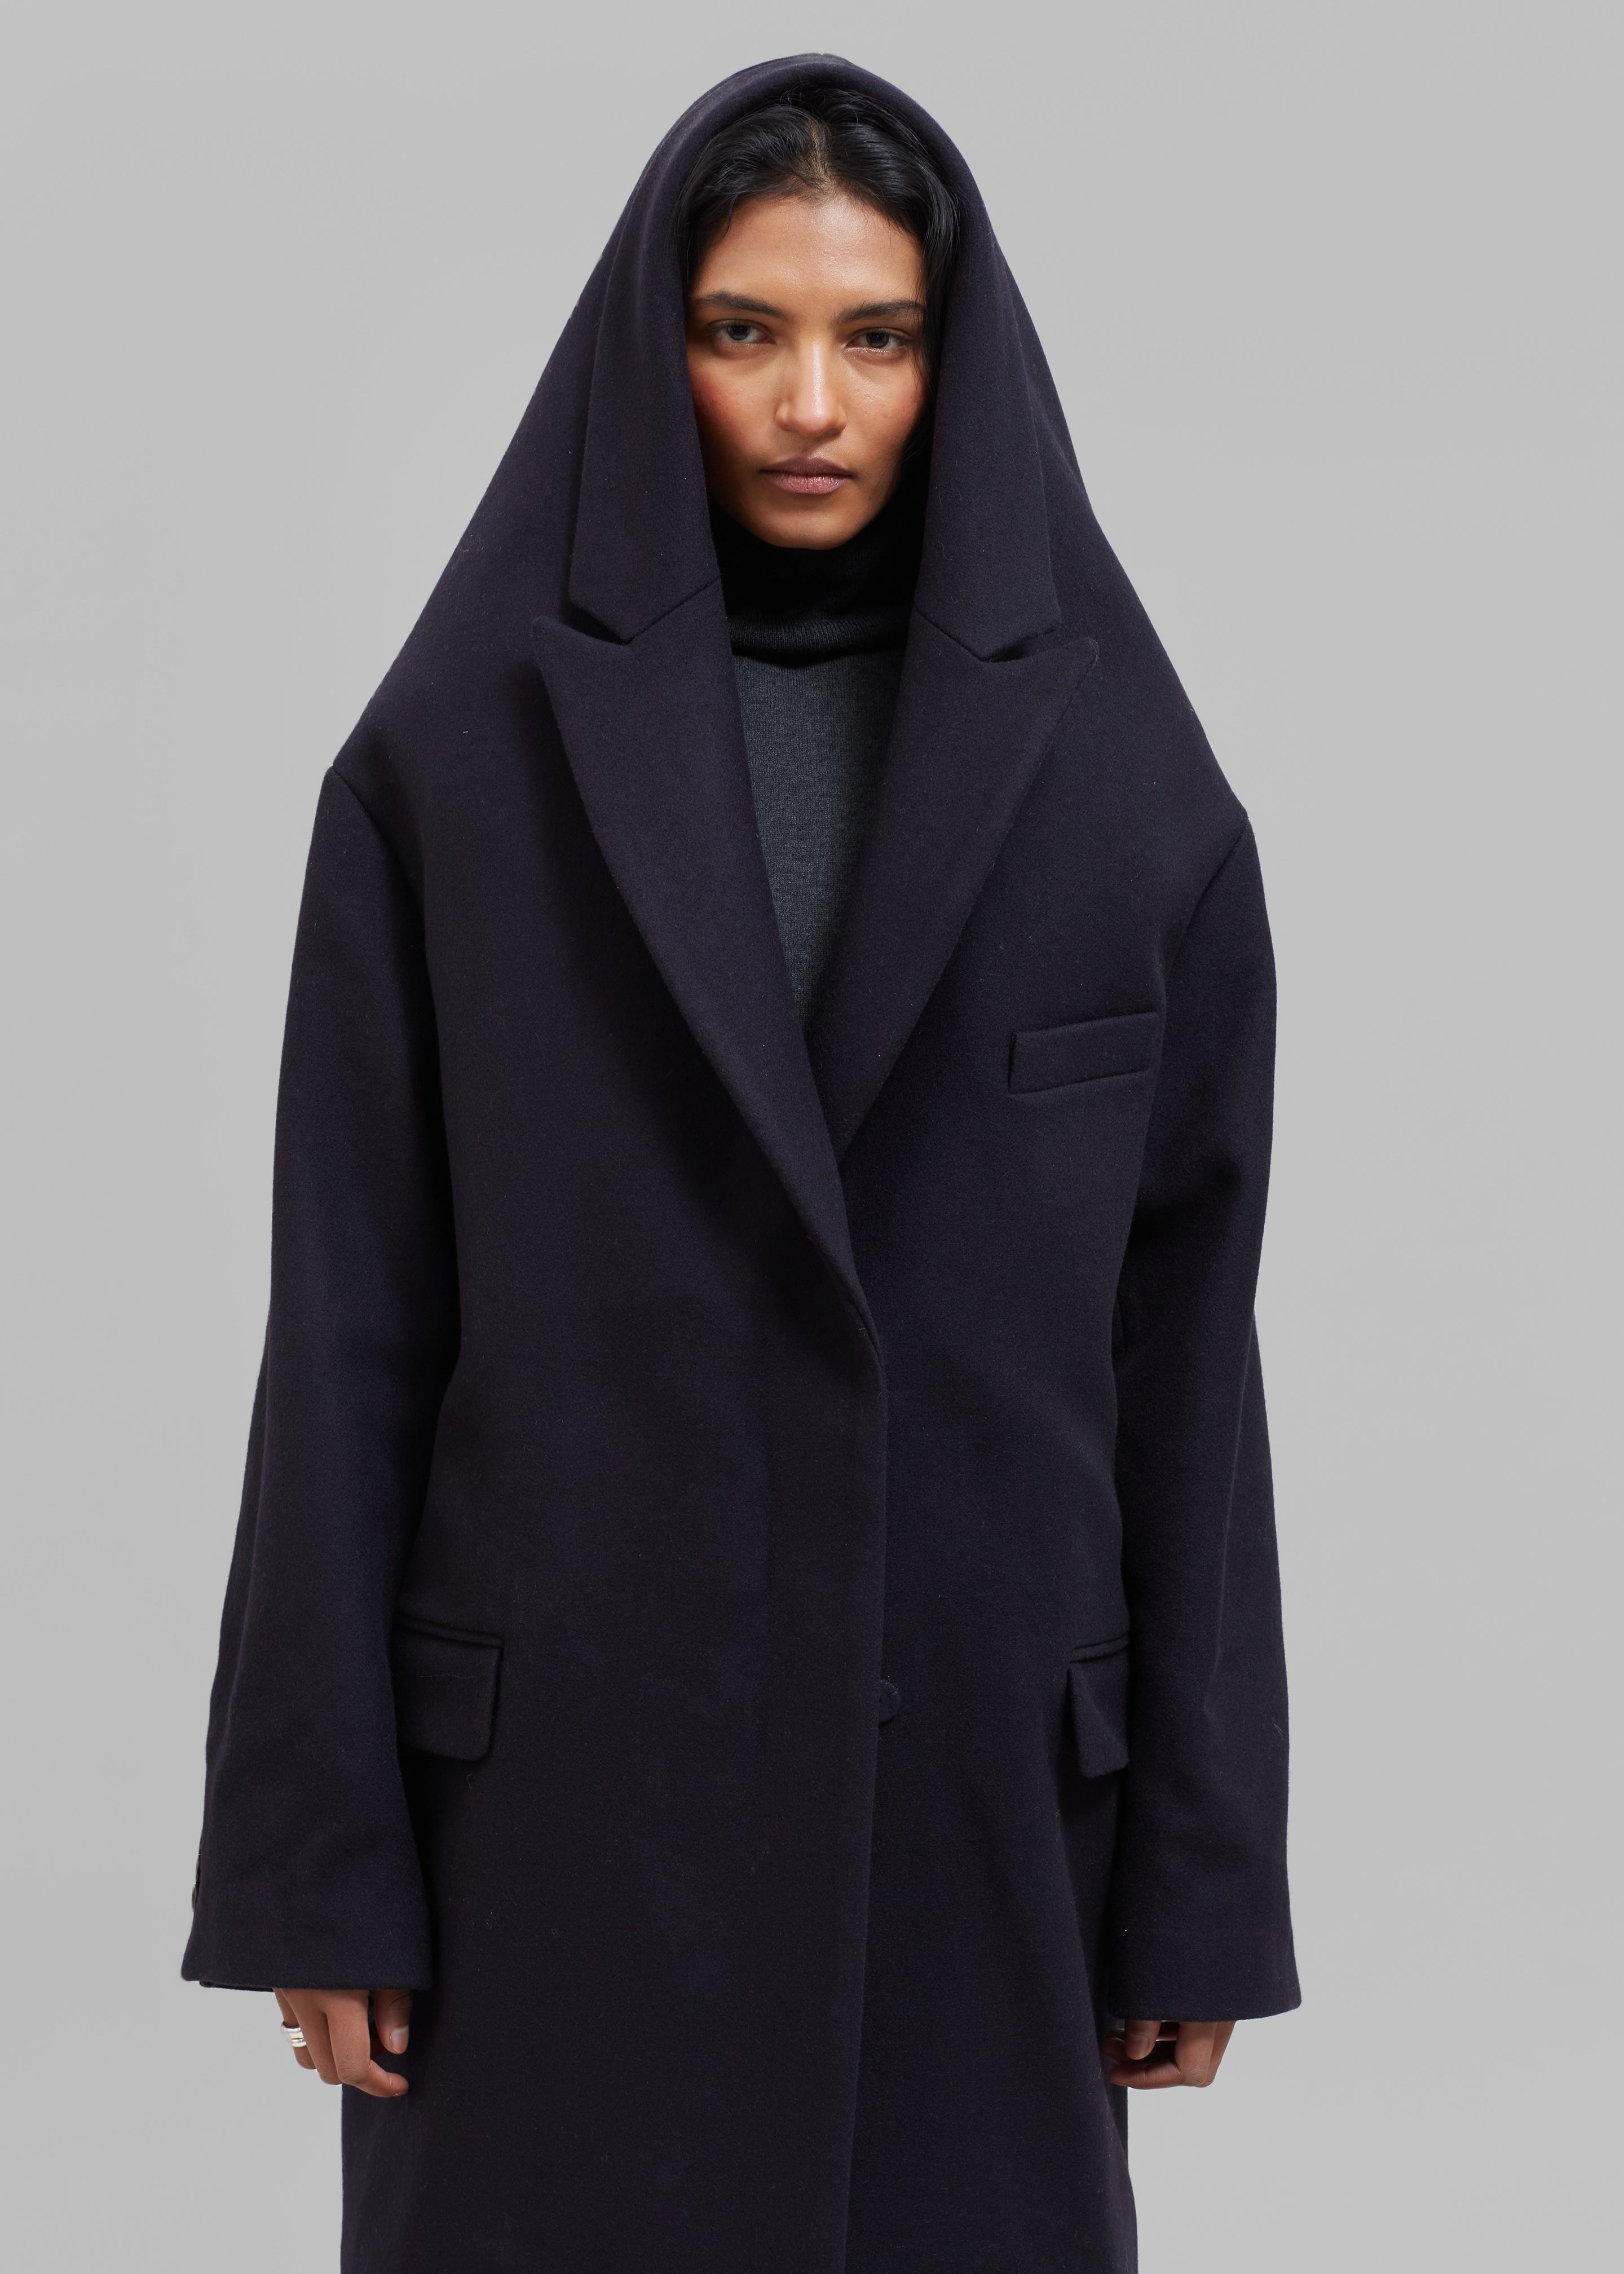 Hooded Wool Coat Women, Blue Wool Winter Coat, Asymmetric Long